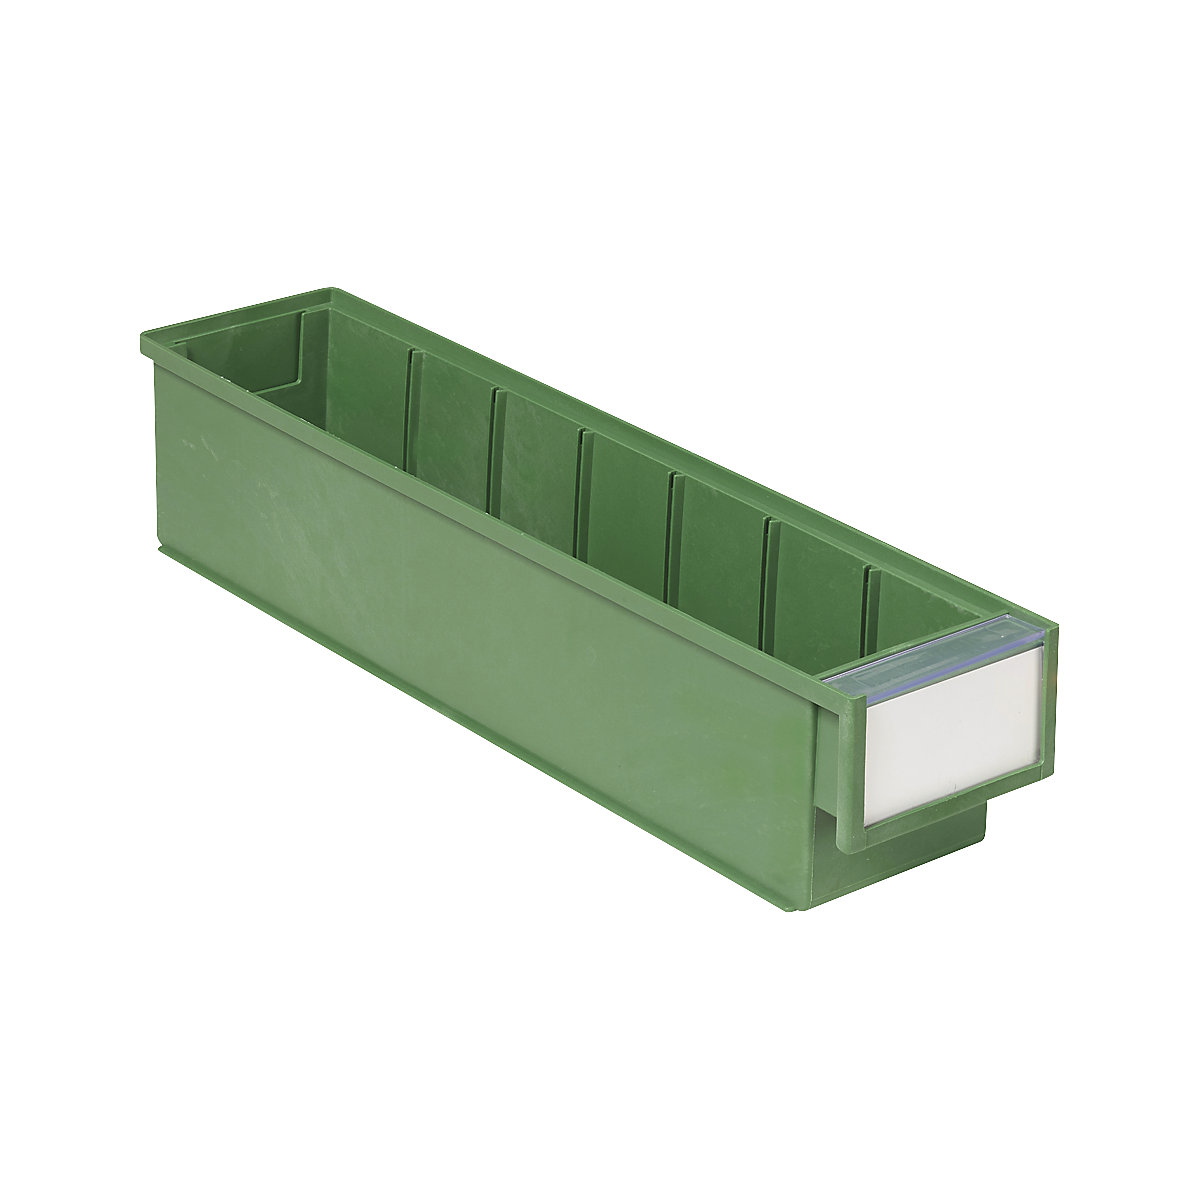 Bac de stockage BiOX – Treston, vert, L x l x h 400 x 90 x 82 mm, lot de 30-5